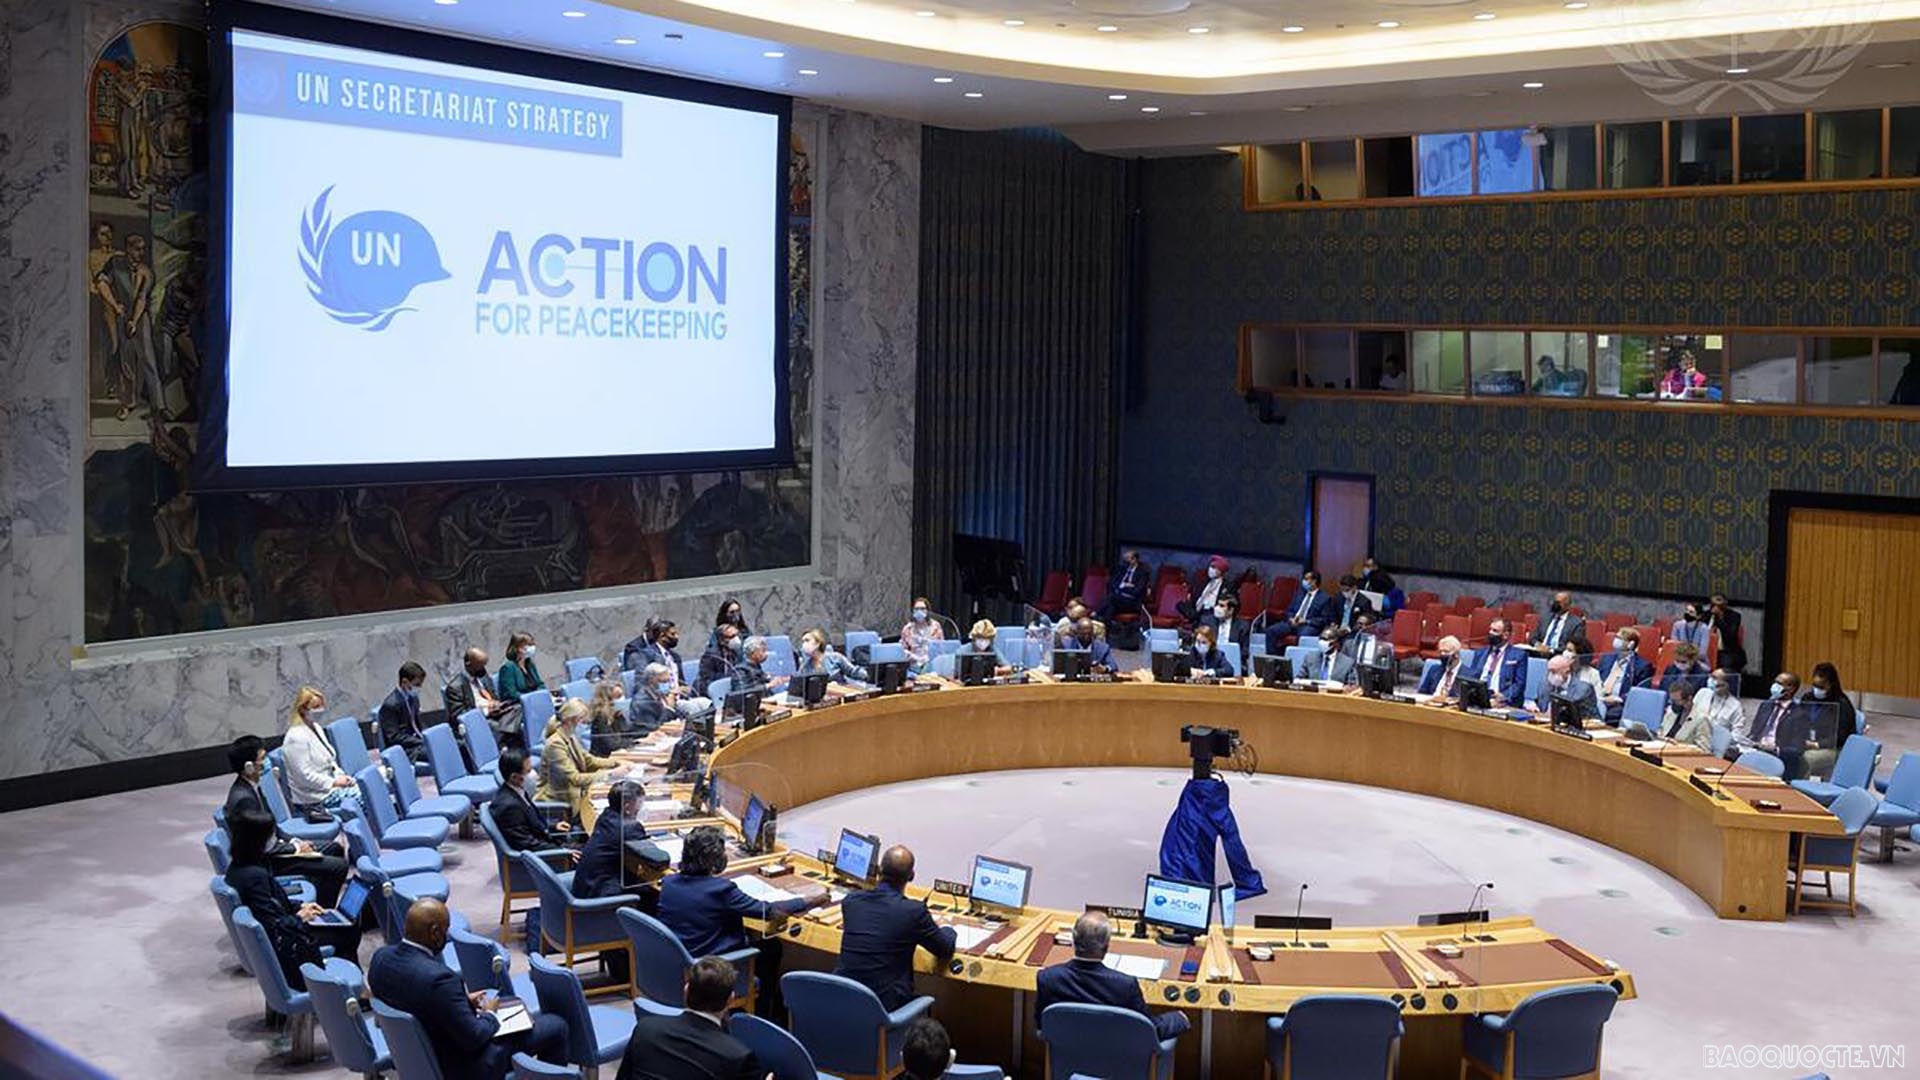 Hội đồng Bảo an Liên hợp quốc đã tổ chức thảo luận mở về “Bảo vệ nhân viên gìn giữ hòa bình: Công nghệ và gìn giữ hòa bình” 